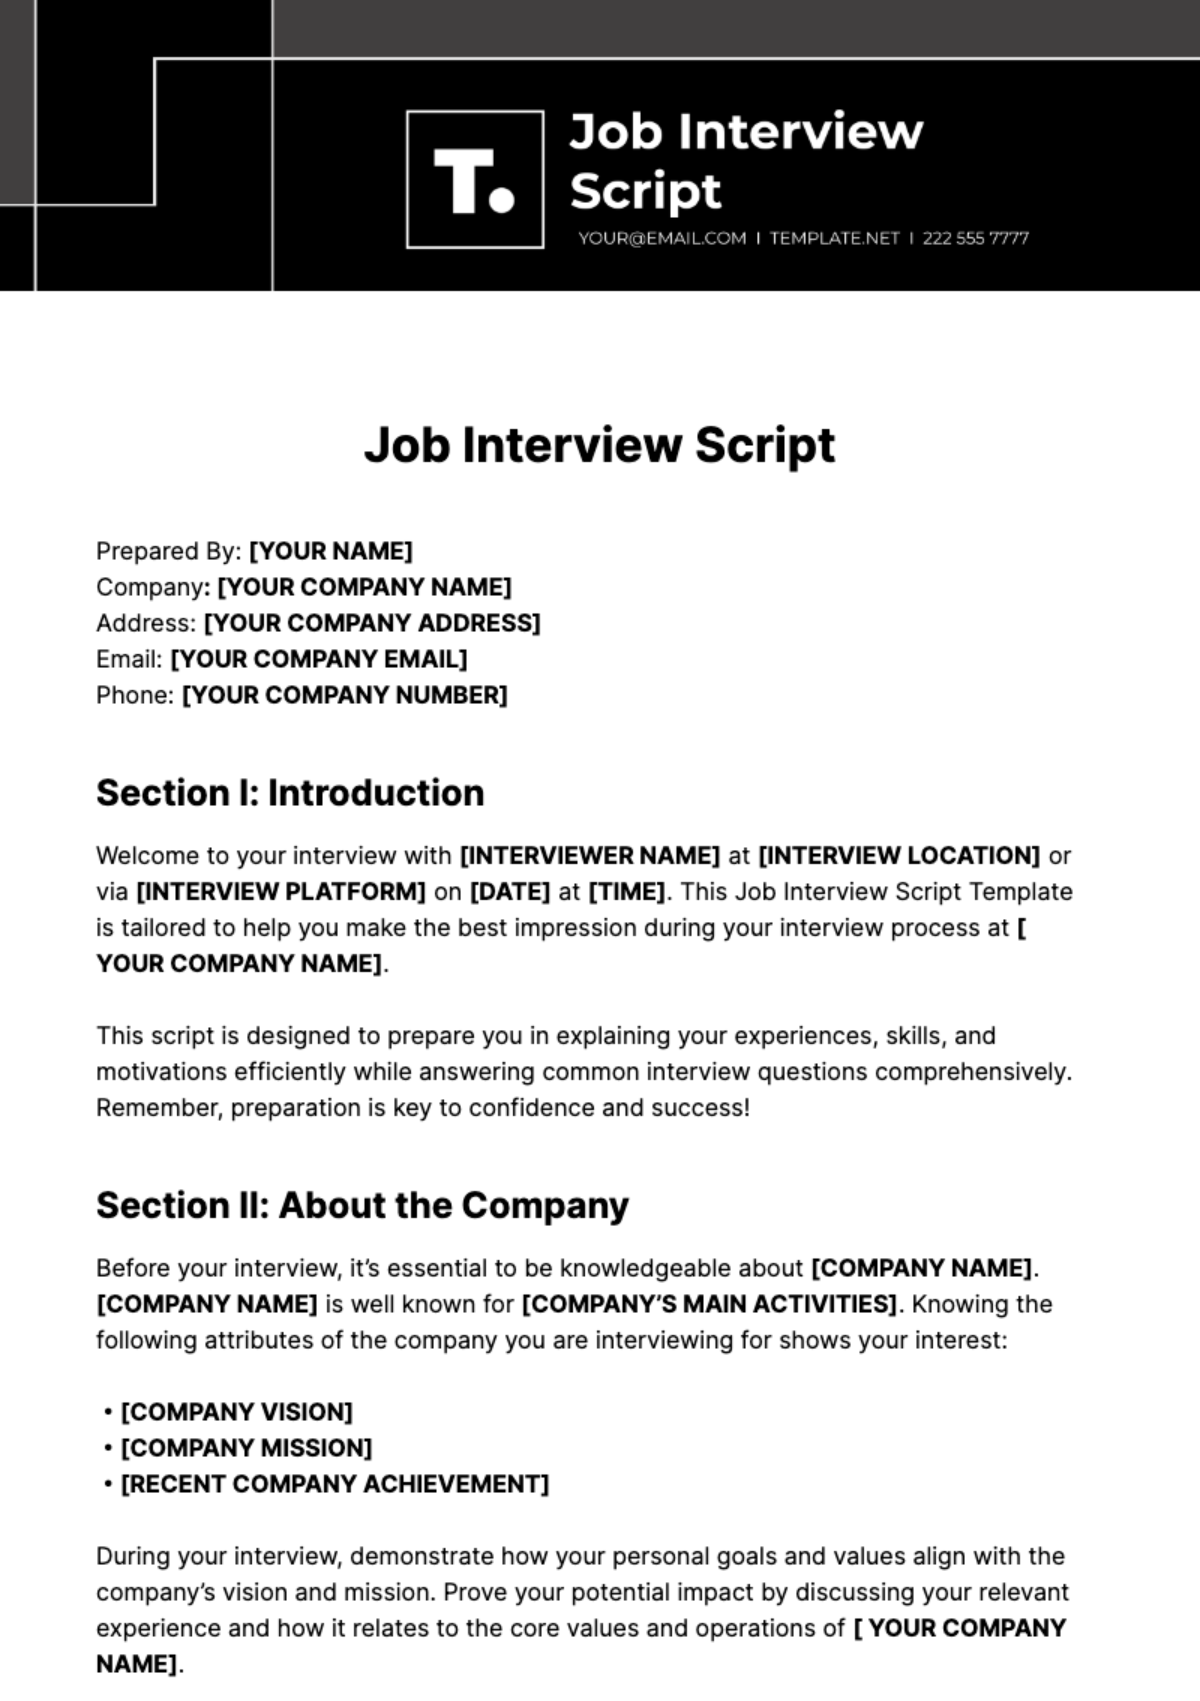 Job Interview Script Template